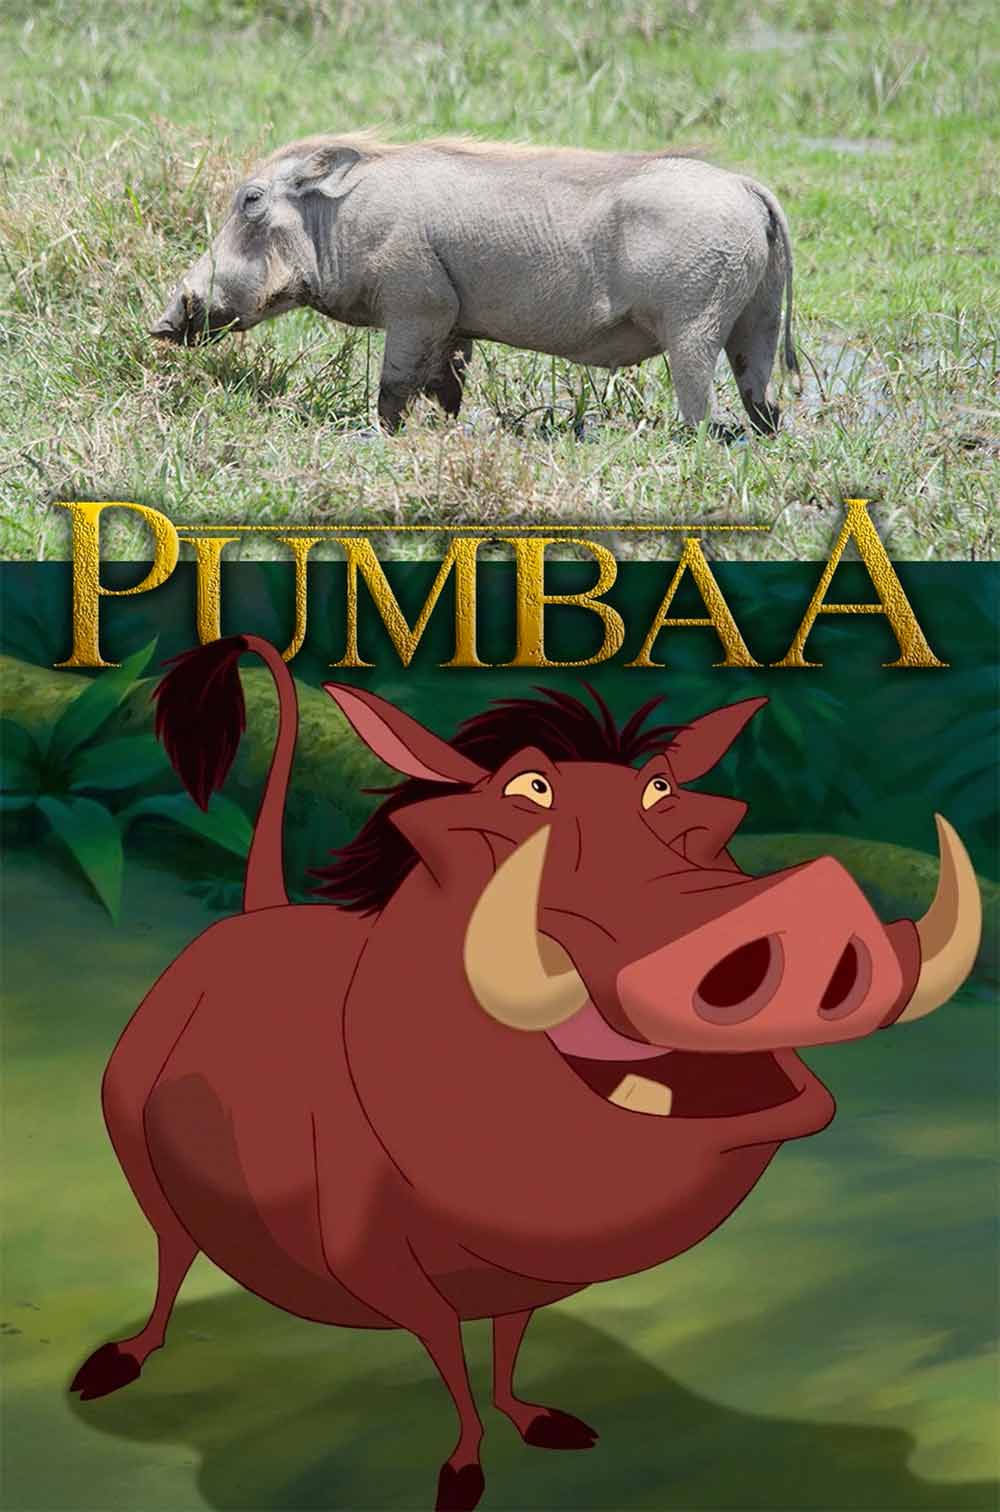 Pumbaa is a warthog